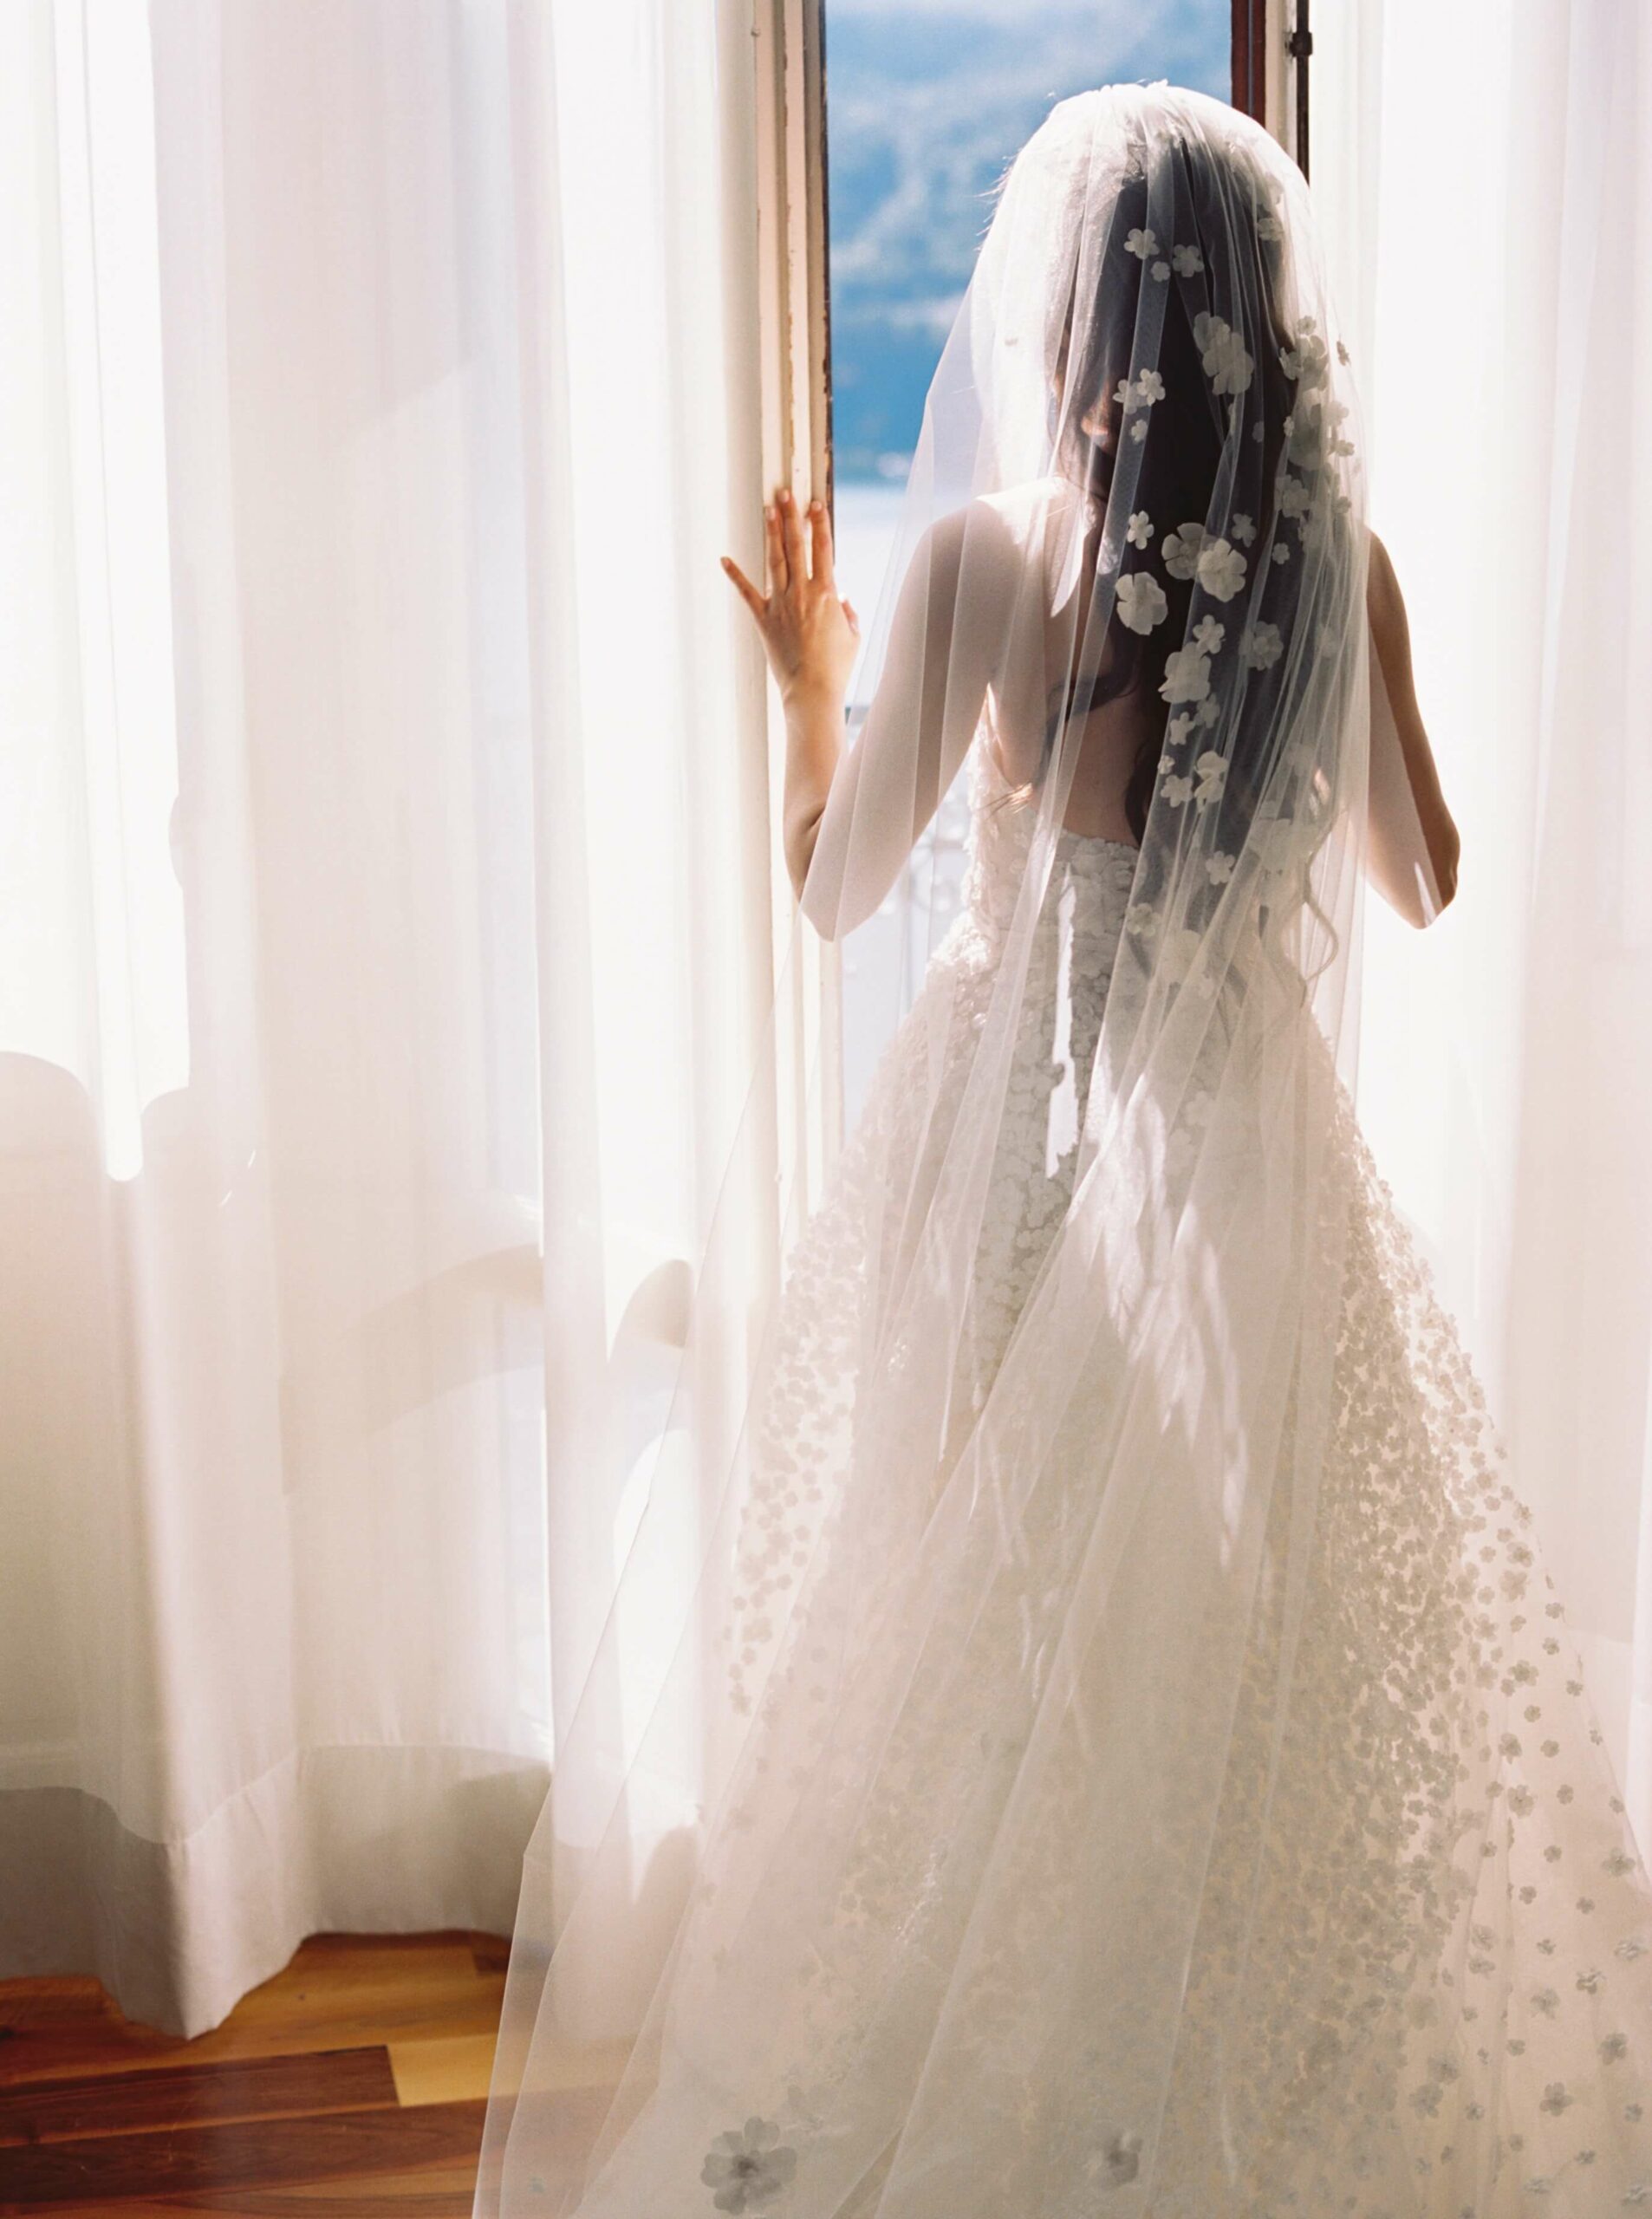 Anasasia wearing Gigi gown, cuffs & veil